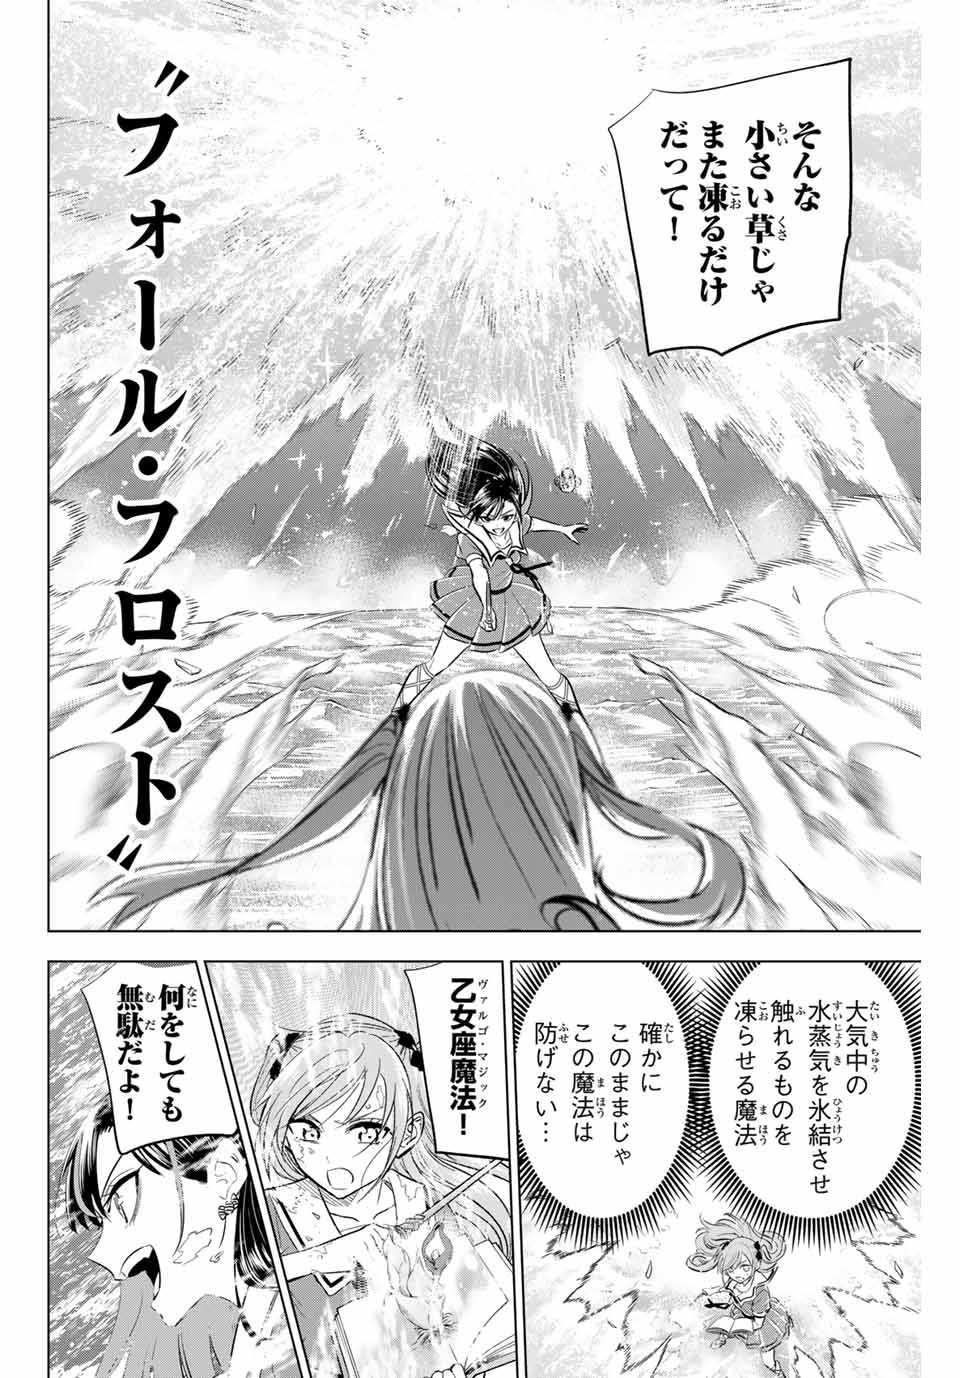 Kuroneko to Majo no Kyoushitsu - Chapter 55 - Page 4